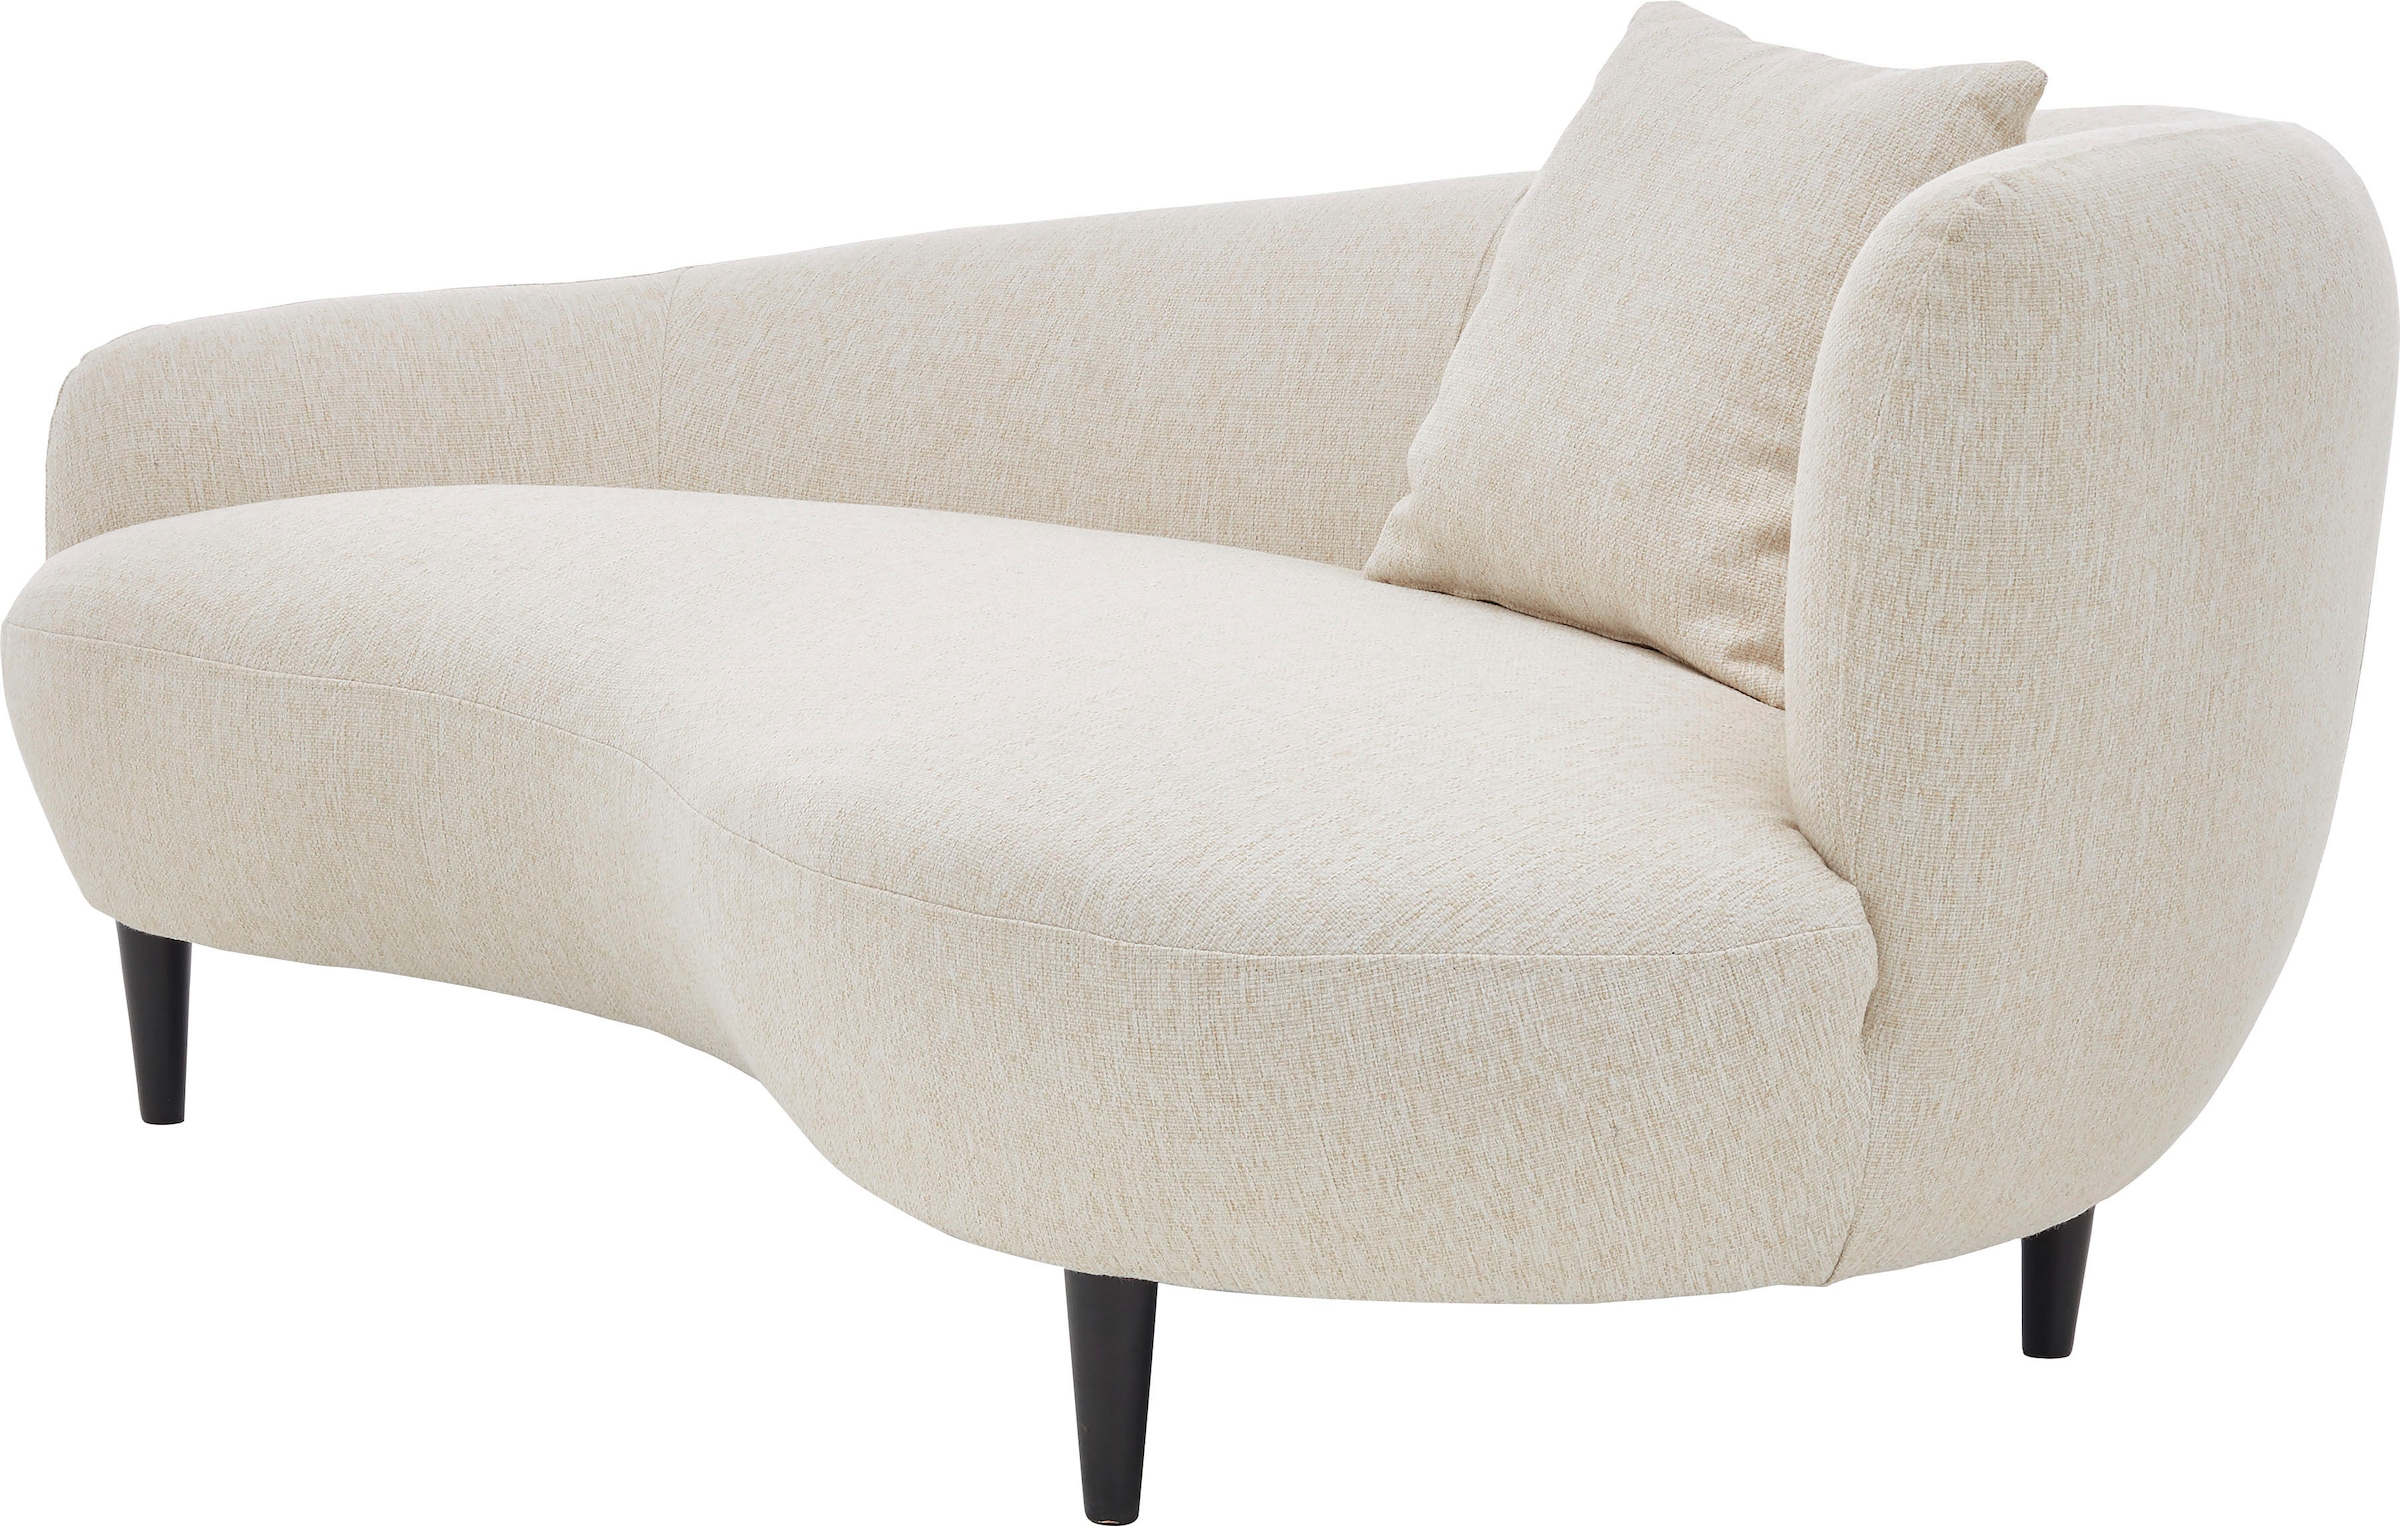 ATLANTIC home collection Chaiselongue, im mit Originalbezug Raten Zierkissen kaufen auf Nierenform-Sofa